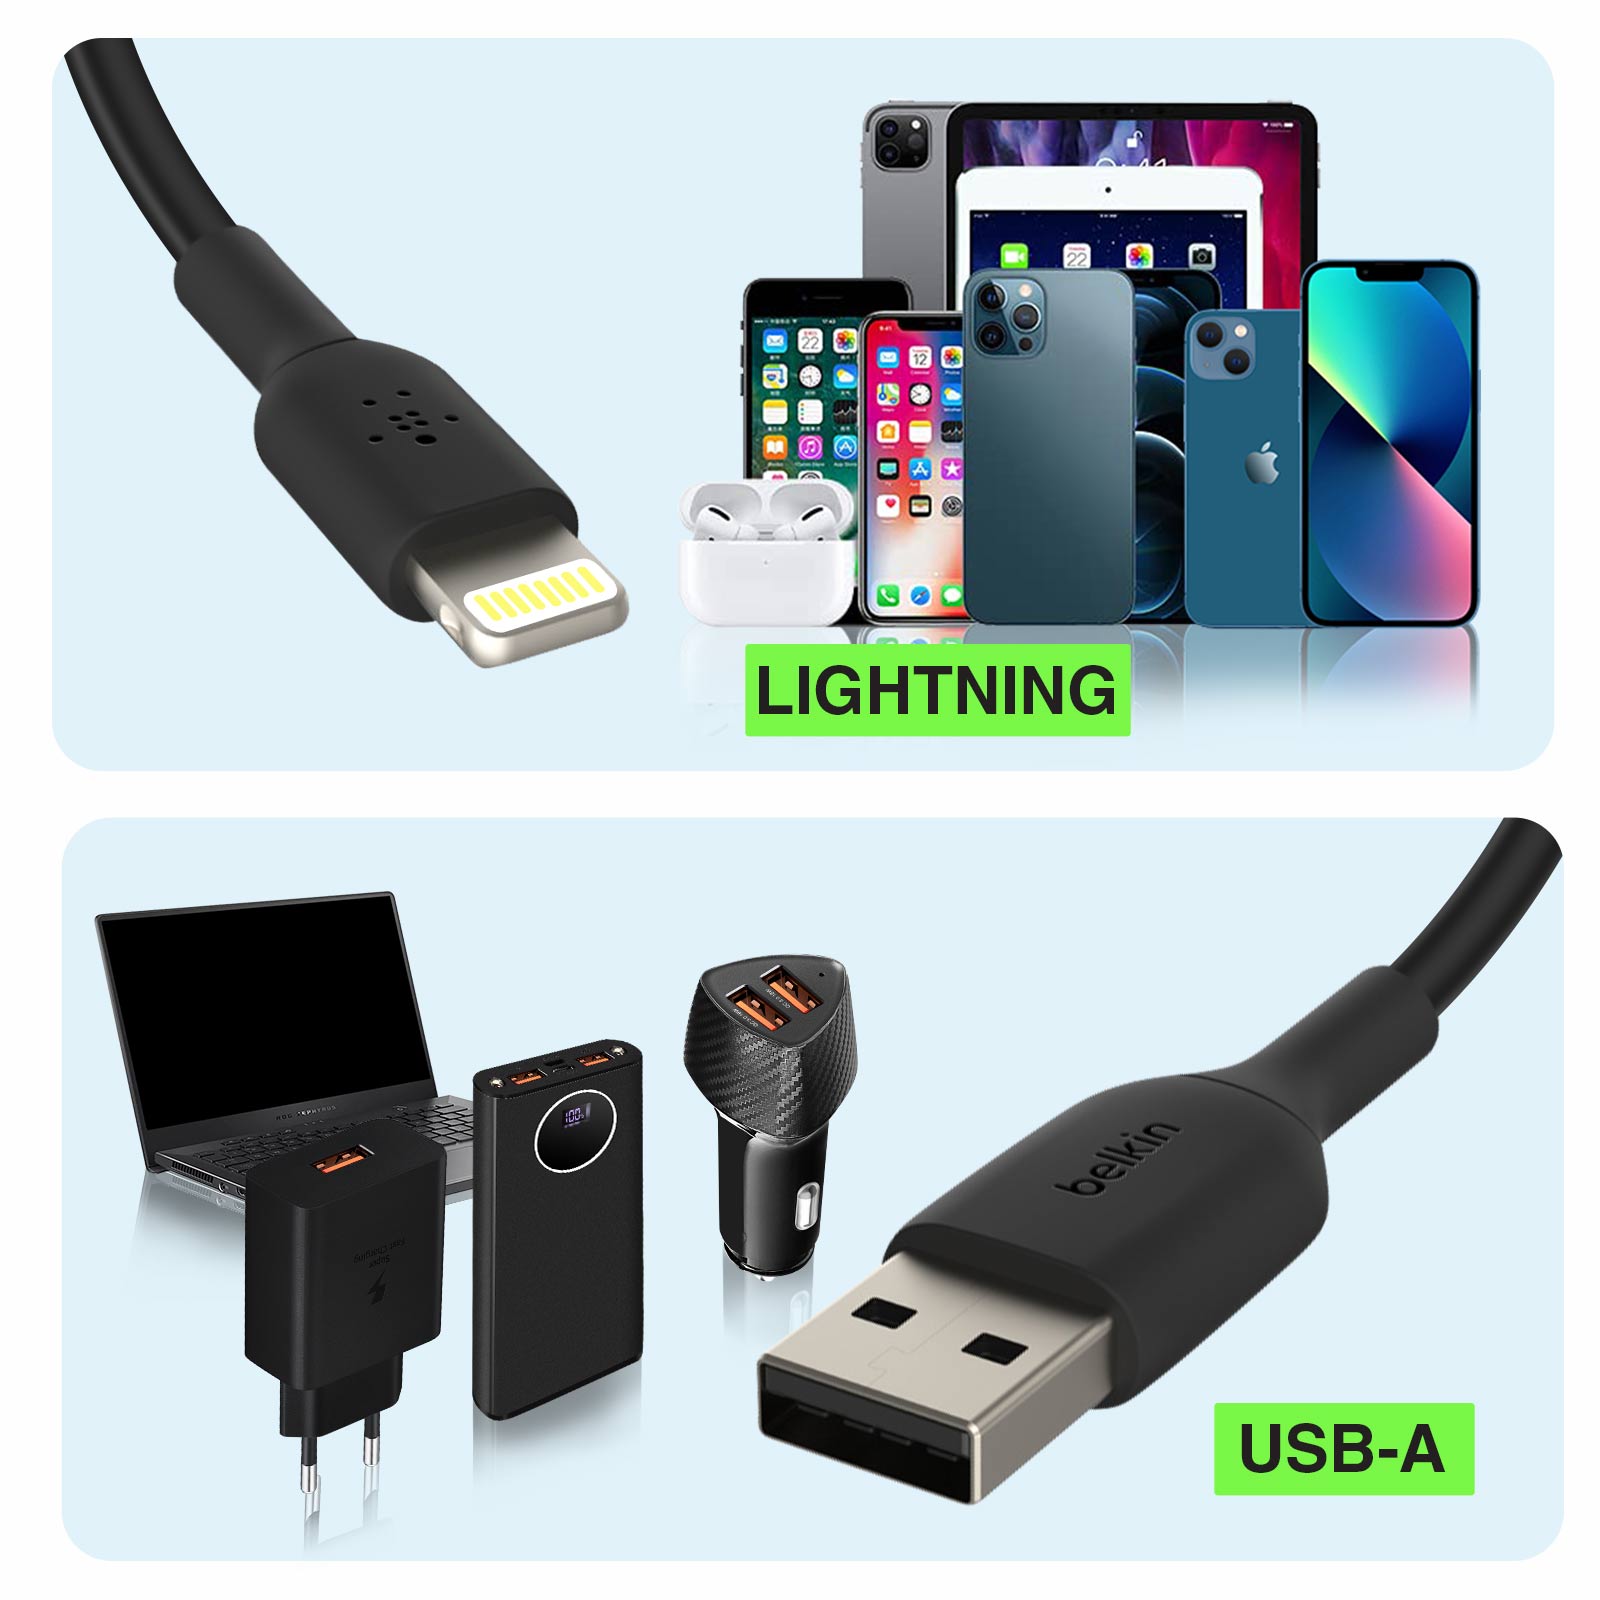 Câble Lightning vers USB-A (15 cm/6 po, noir), Belkin